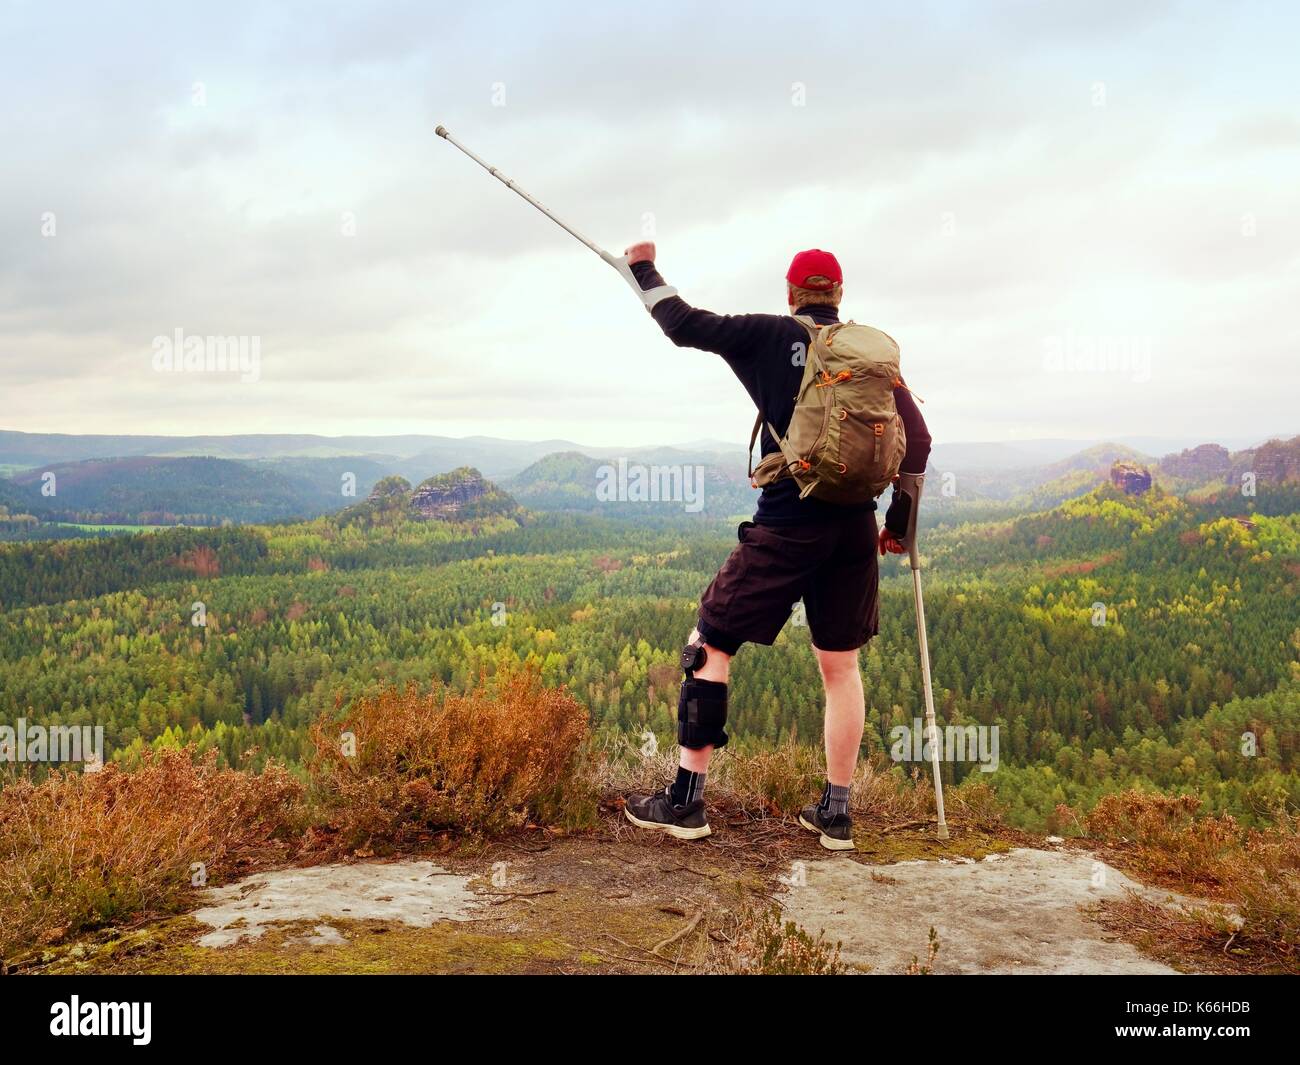 Peak Triumph. Mann mit Bein in Knie Käfige und Krücken für Stabilisierung und Unterstützung. Wanderer mit verstellbaren Seitenteile o Unterstützung zu sichern und Stockfoto